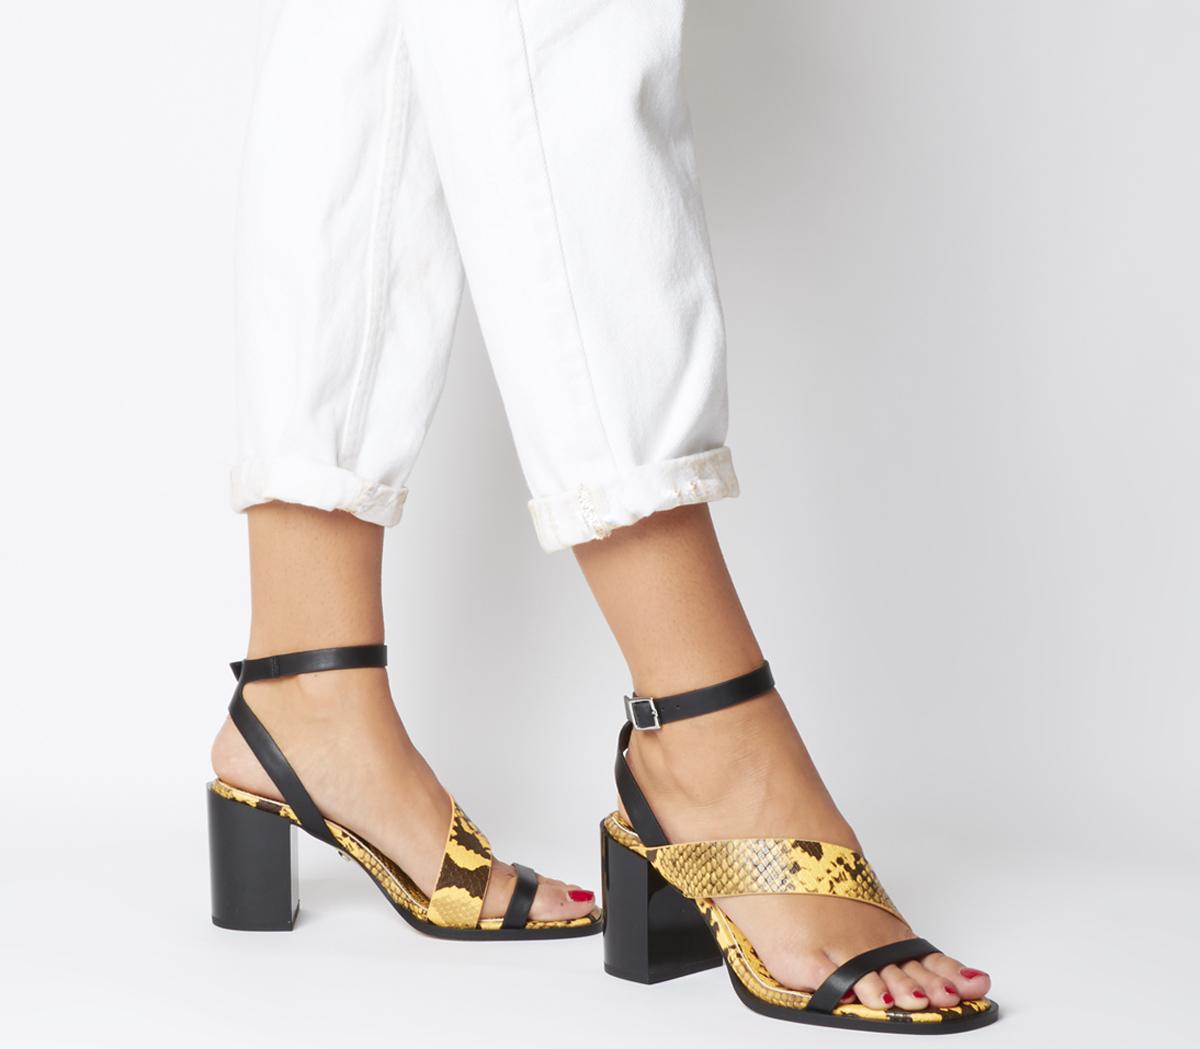 yellow snake heels